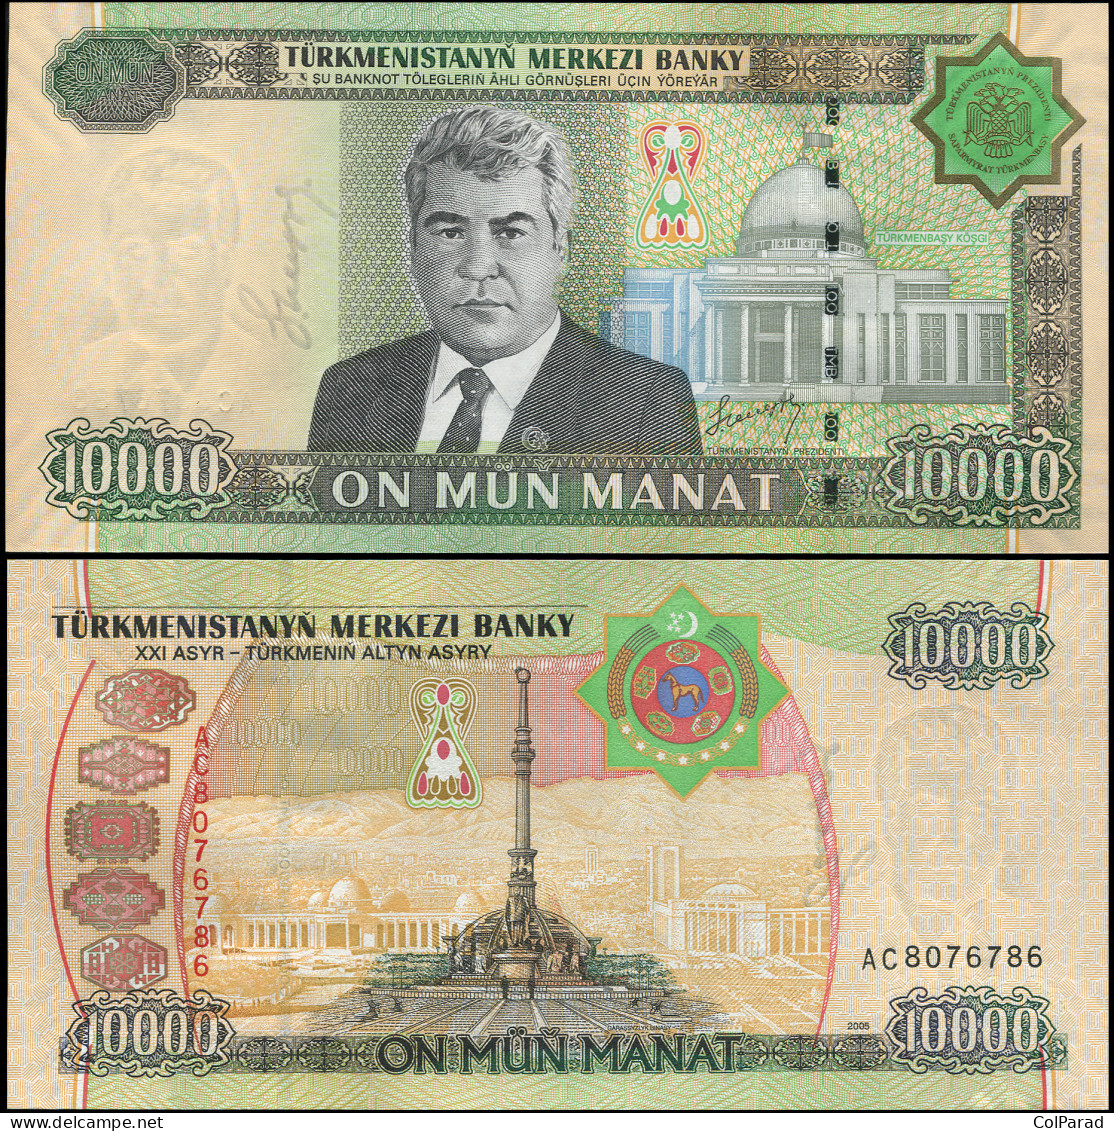 TURKMENISTAN 10000 MANAT - 2005 - Paper Unc - P.16a Banknote - Turkmenistan